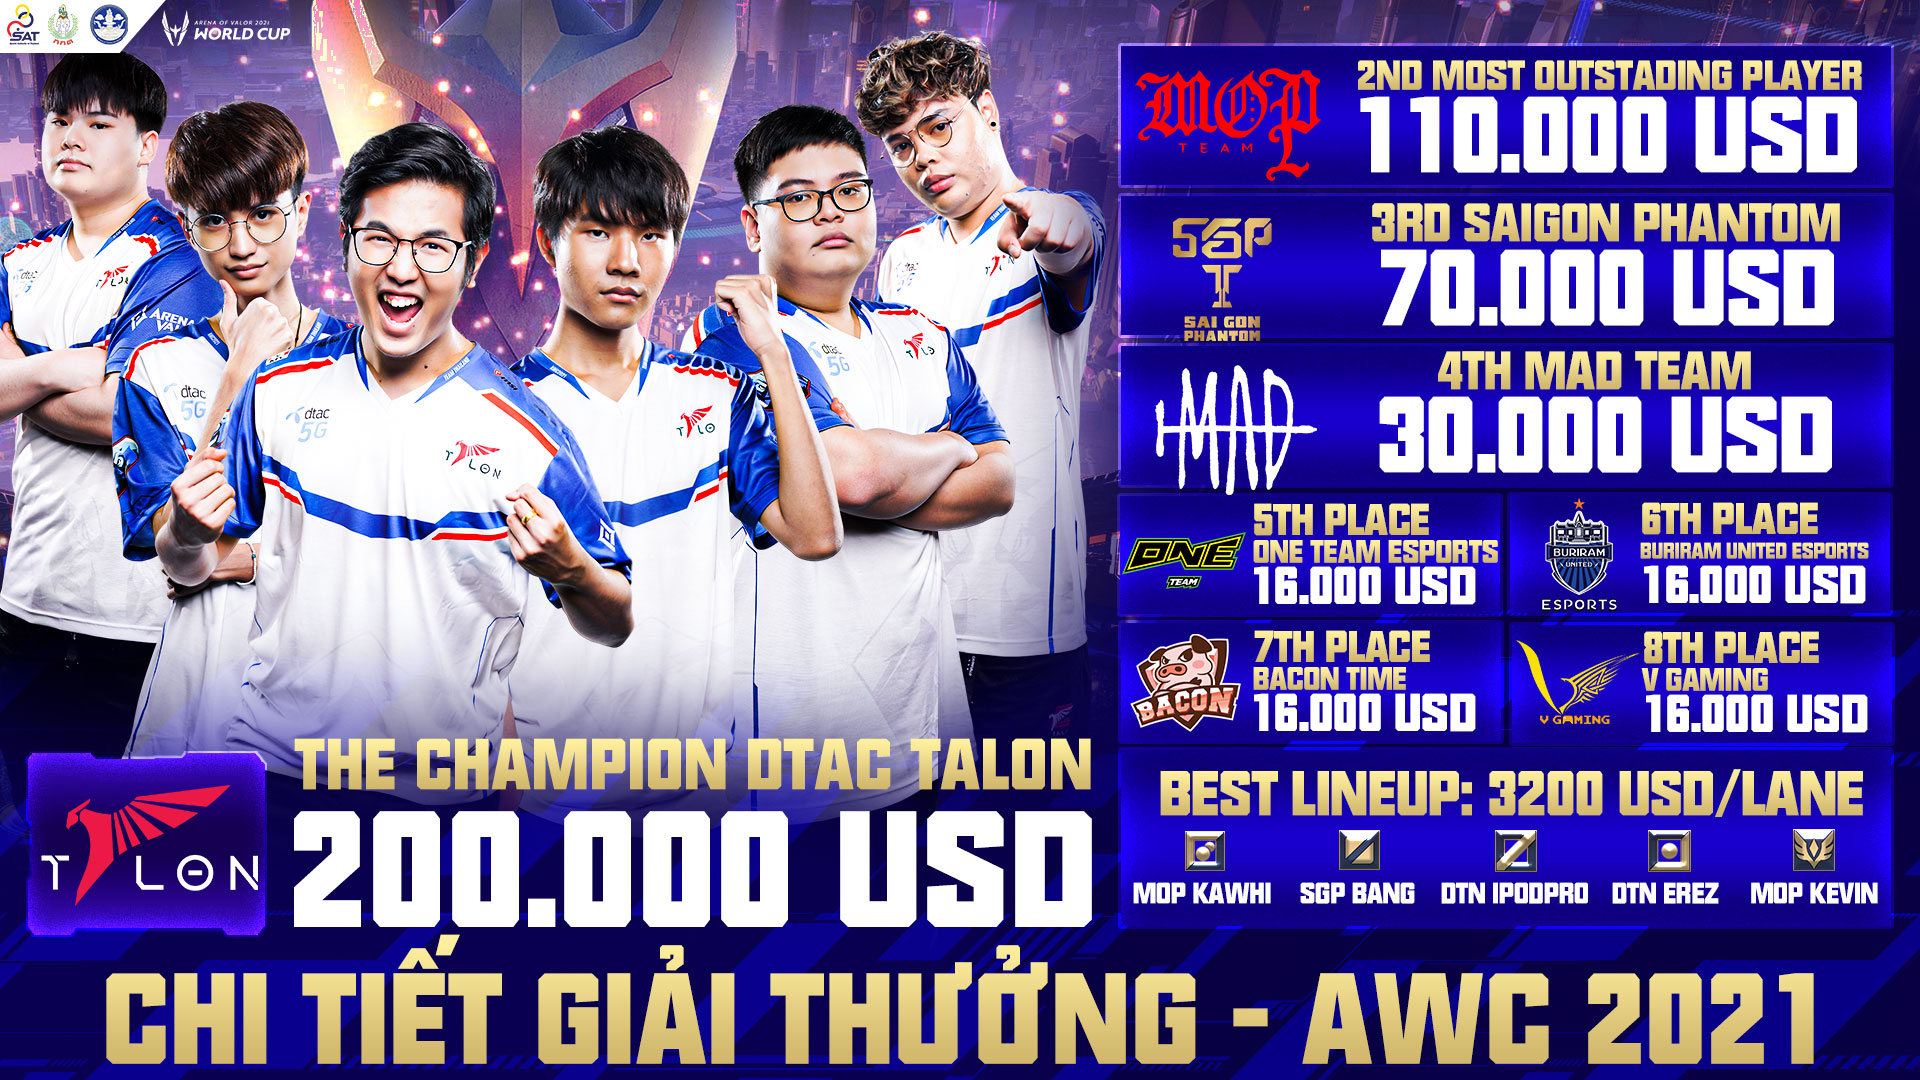 Đại diện Thái Lan dtac Talon trở thành nhà vô địch thế giới tại giải đấu AWC 2021 - Ảnh 4.